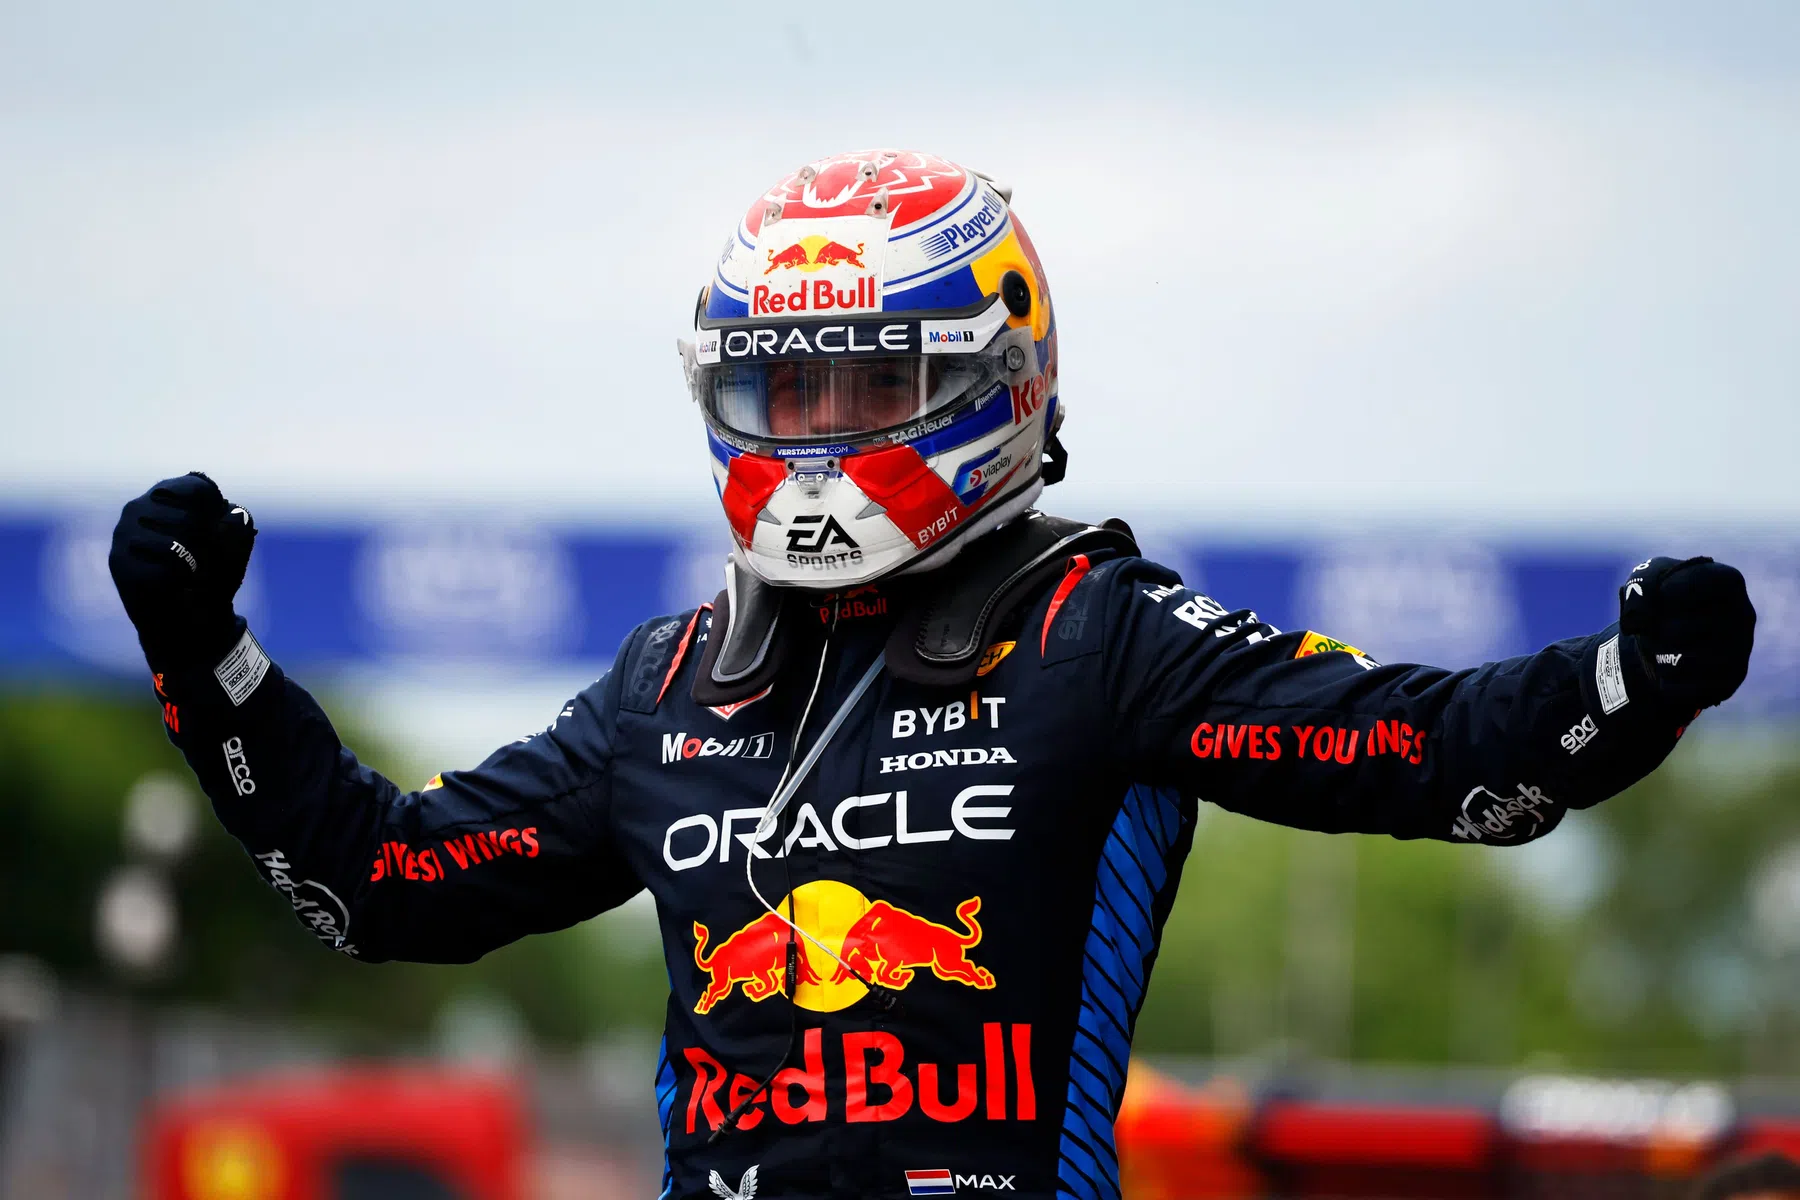 Massimo punteggio per Verstappen dopo il Gran Premio del Canada